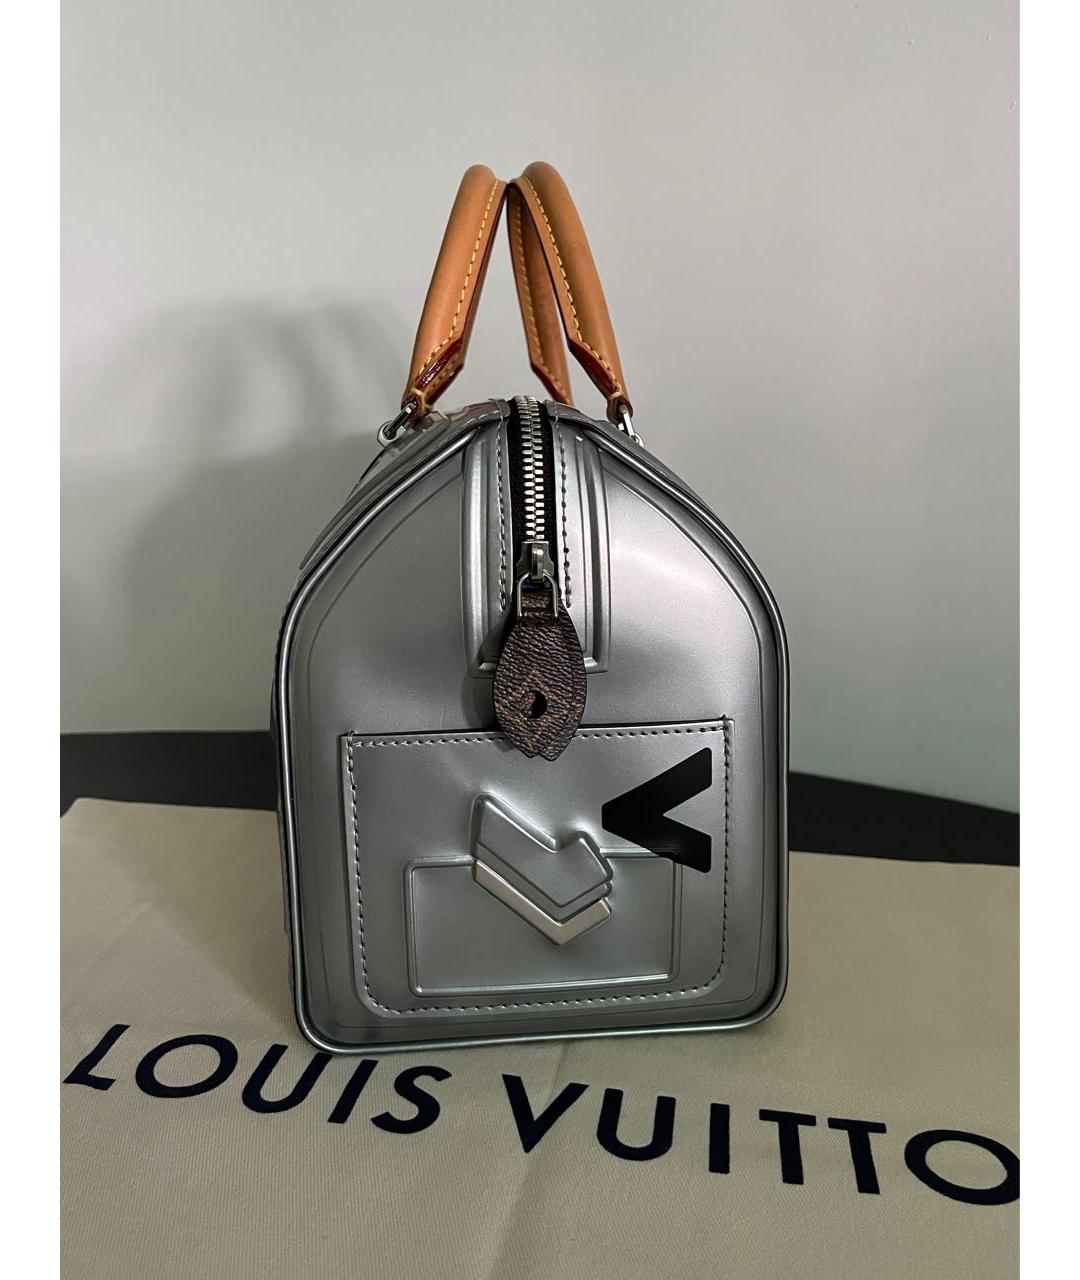 LOUIS VUITTON Серебряная кожаная сумка с короткими ручками, фото 3